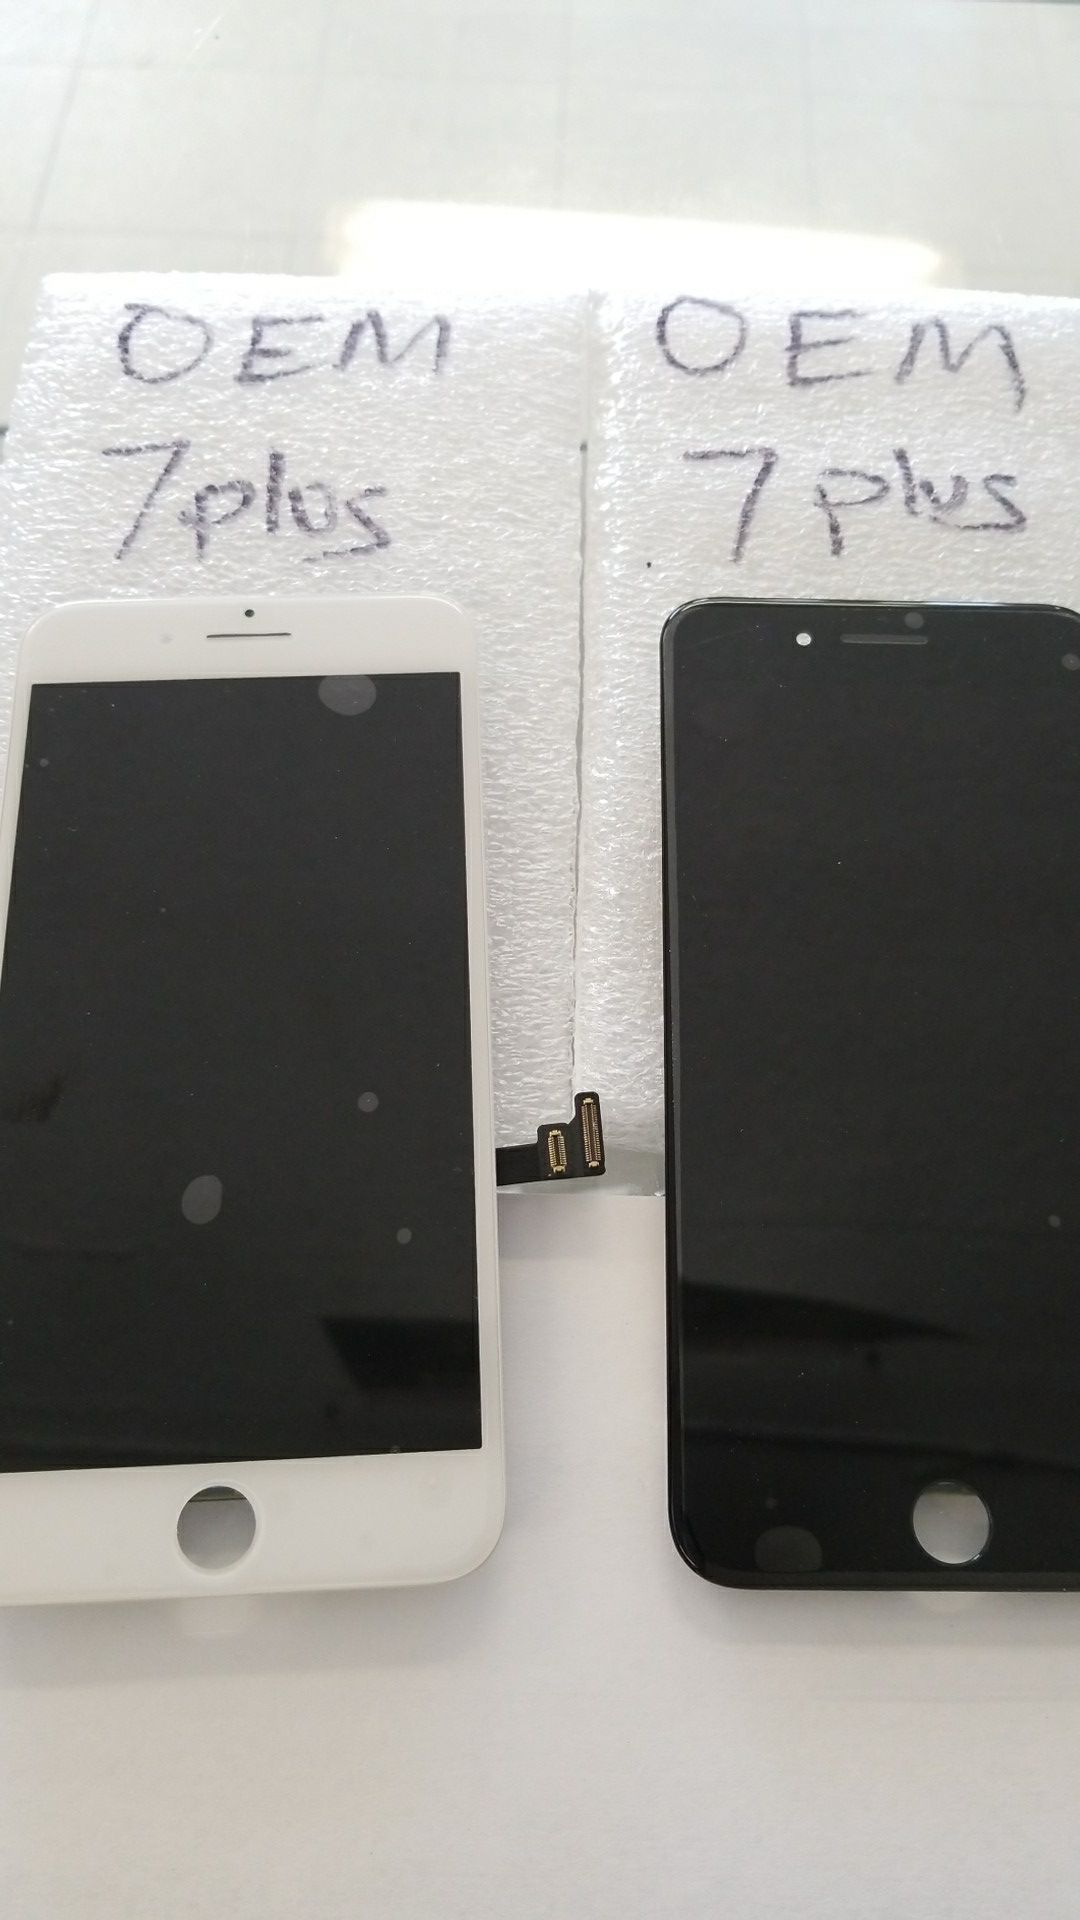 IPhone 6,iPhone 6+, iPhone 6s, iphone 6s+, iPhone 7, iPhone 7+